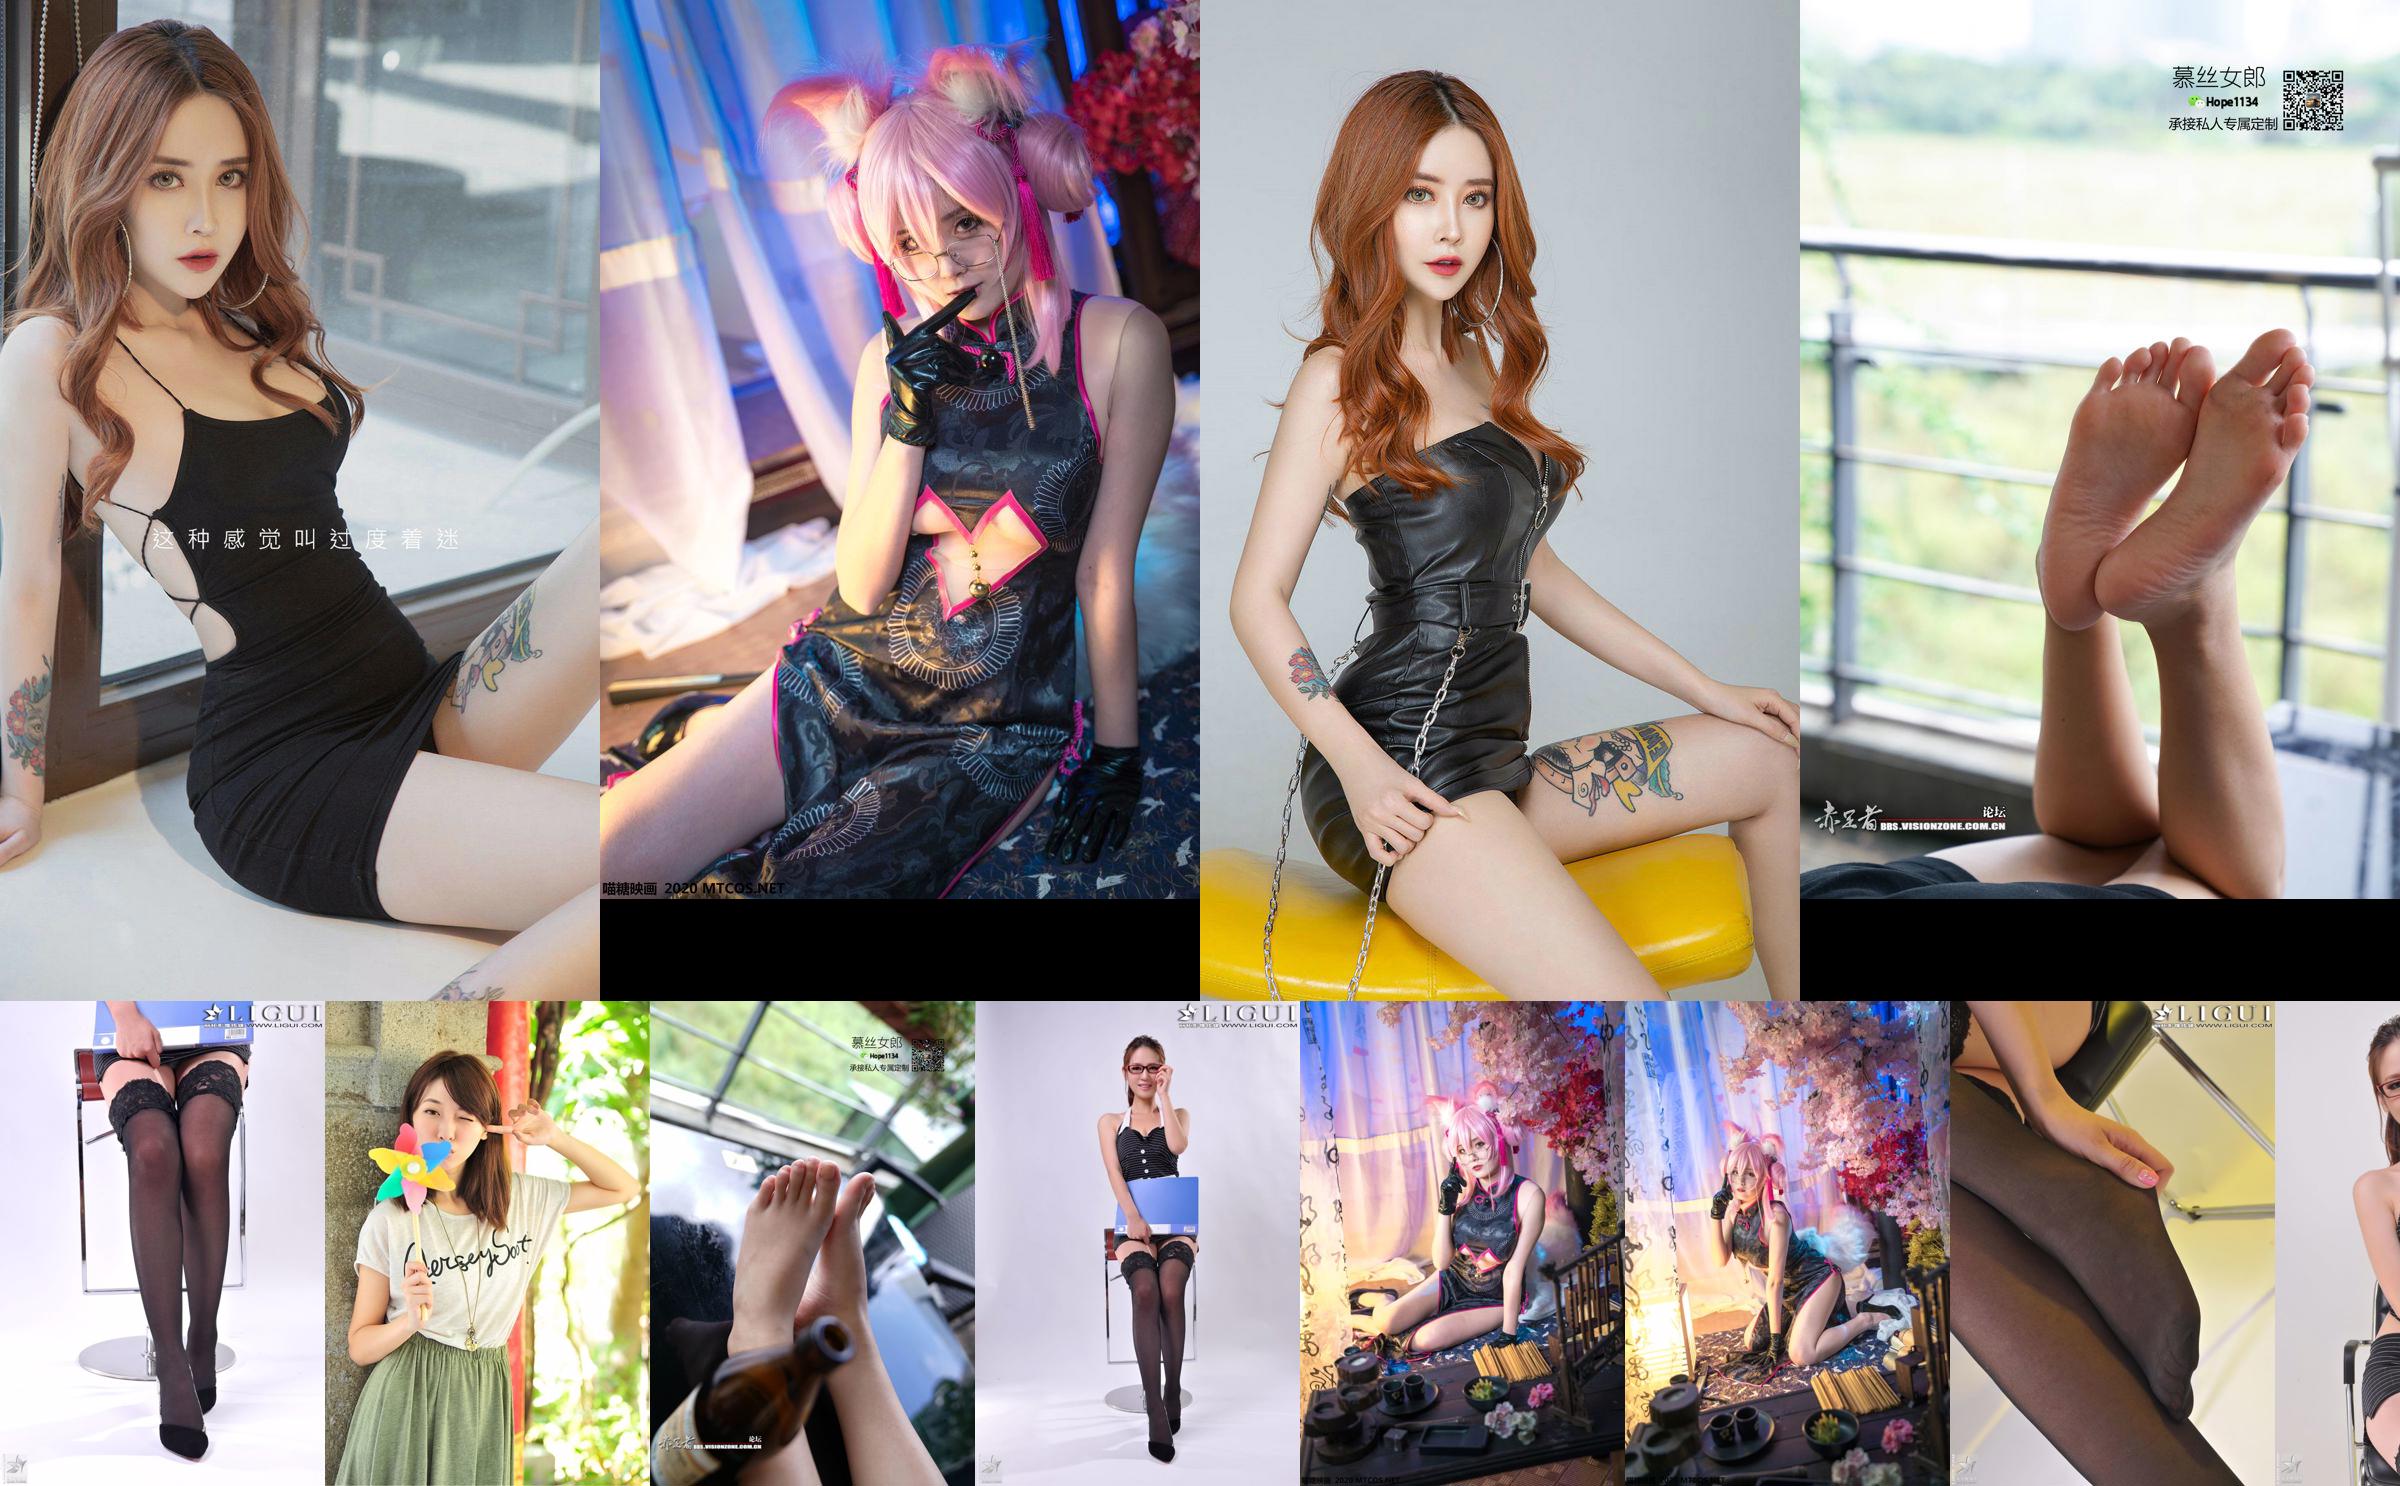 [丽柜贵足LiGui] Model Xiaoyu's "Professional Wear Glasses Girl" Complete Works No.7819a5 Page 1